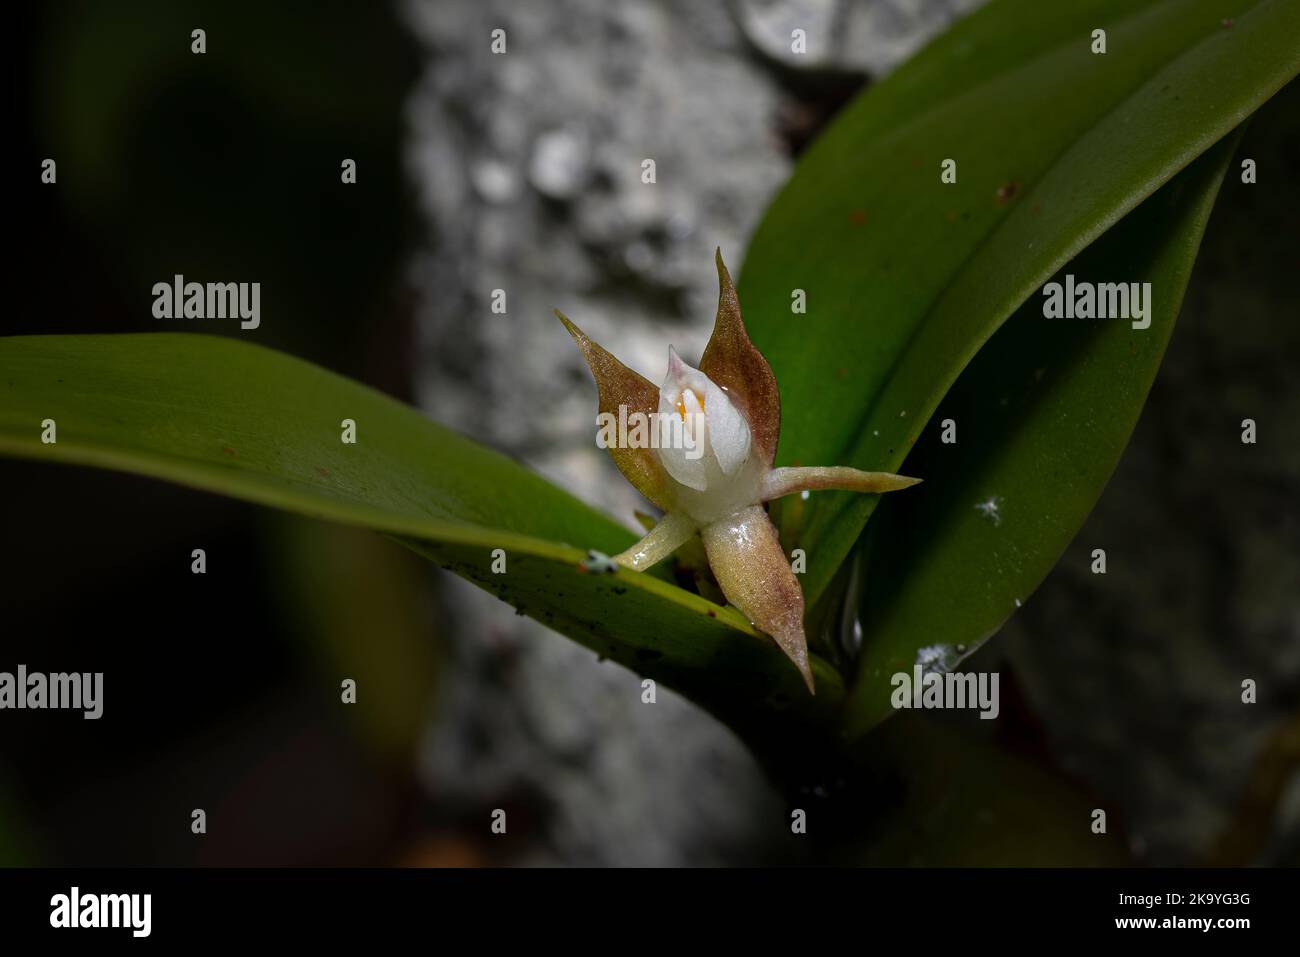 Petite fleur d'orchidée poussant au milieu de la feuille Banque D'Images